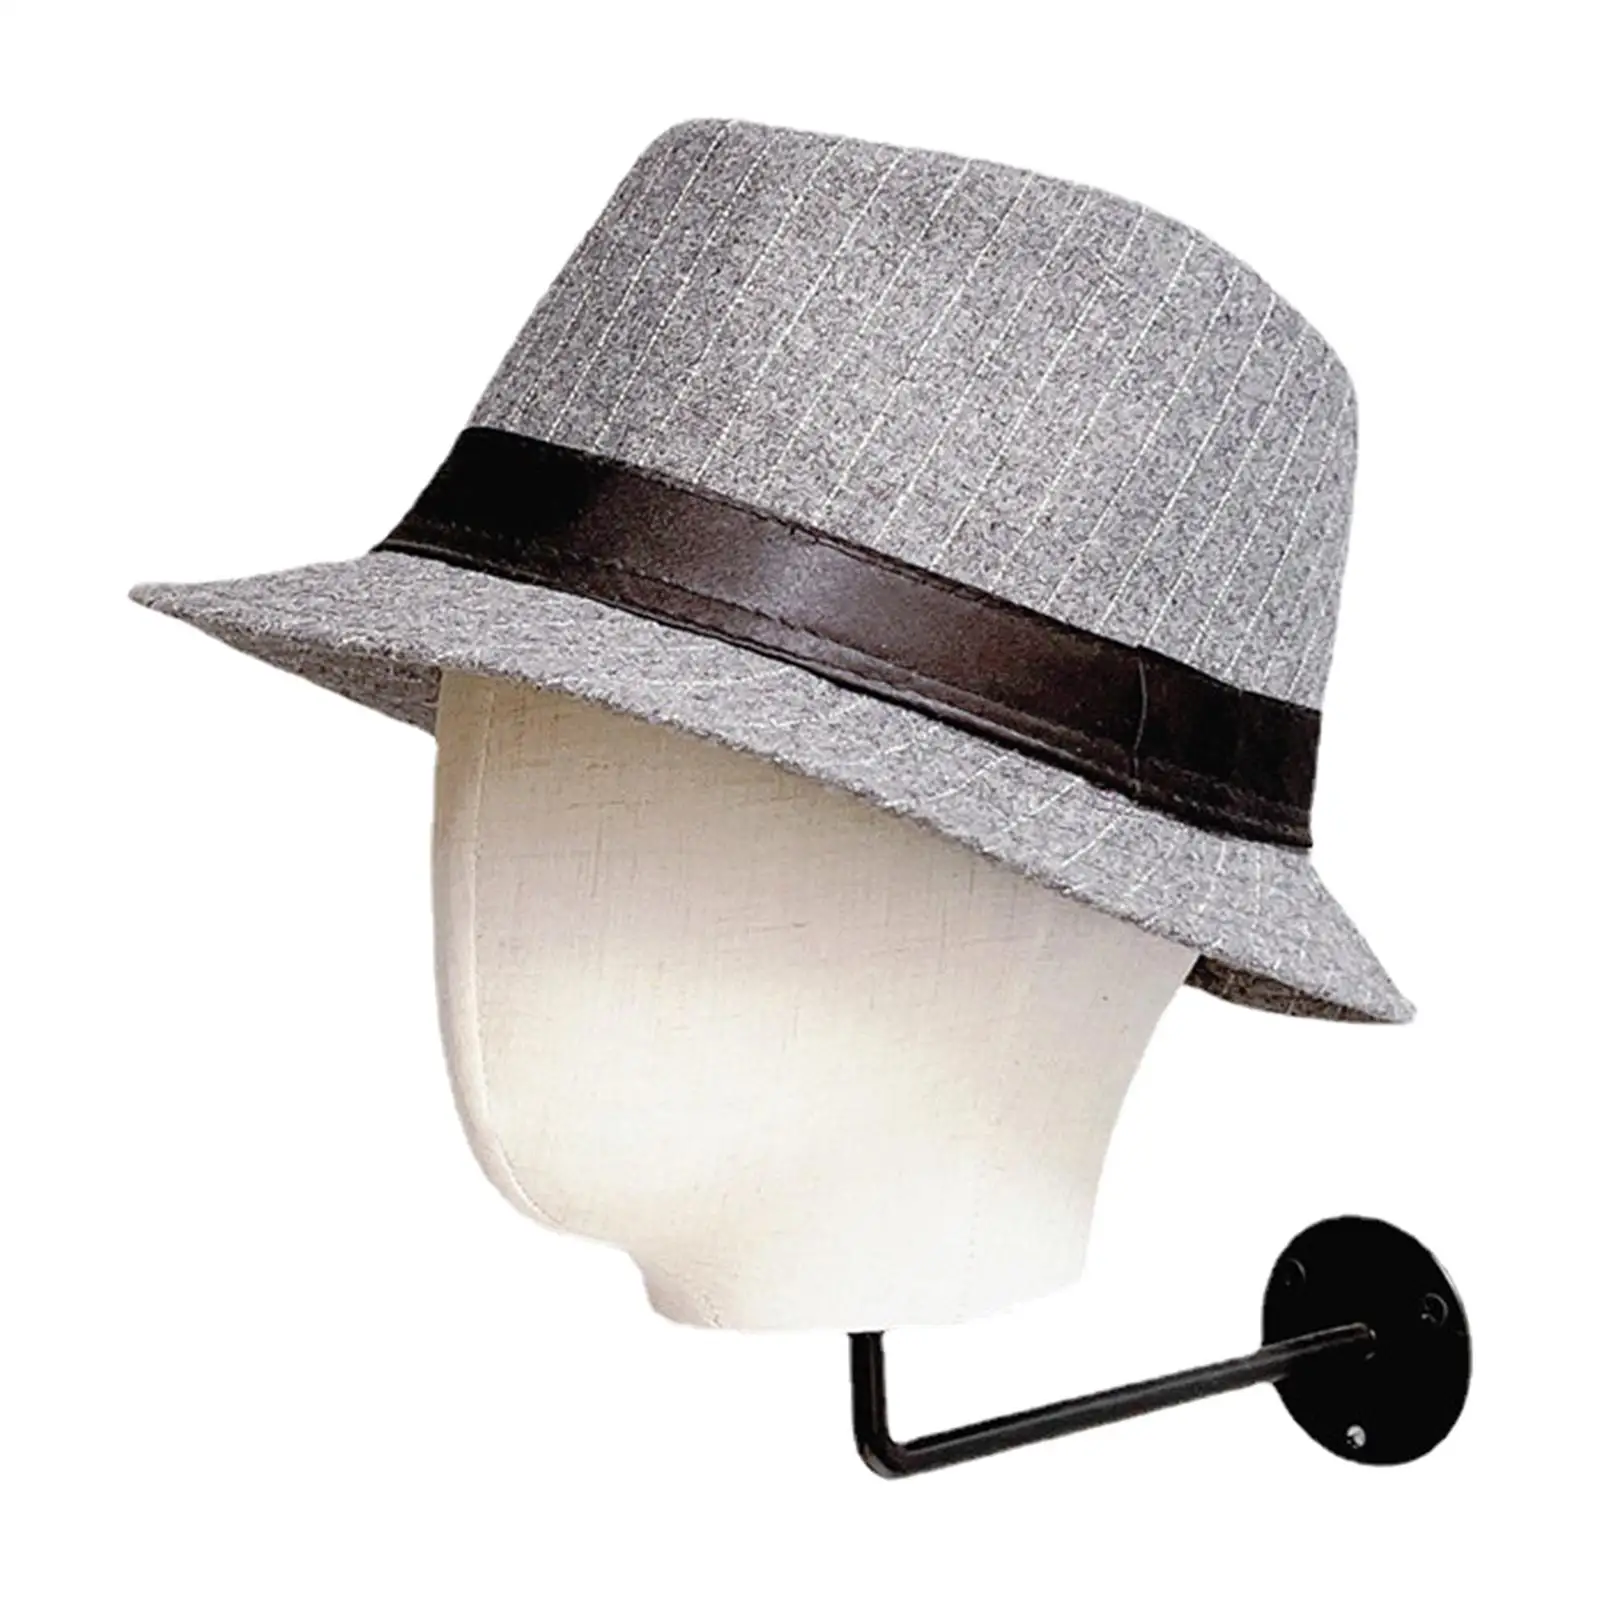  Mounted Manikin head 54cm Hat Display Storage Holder